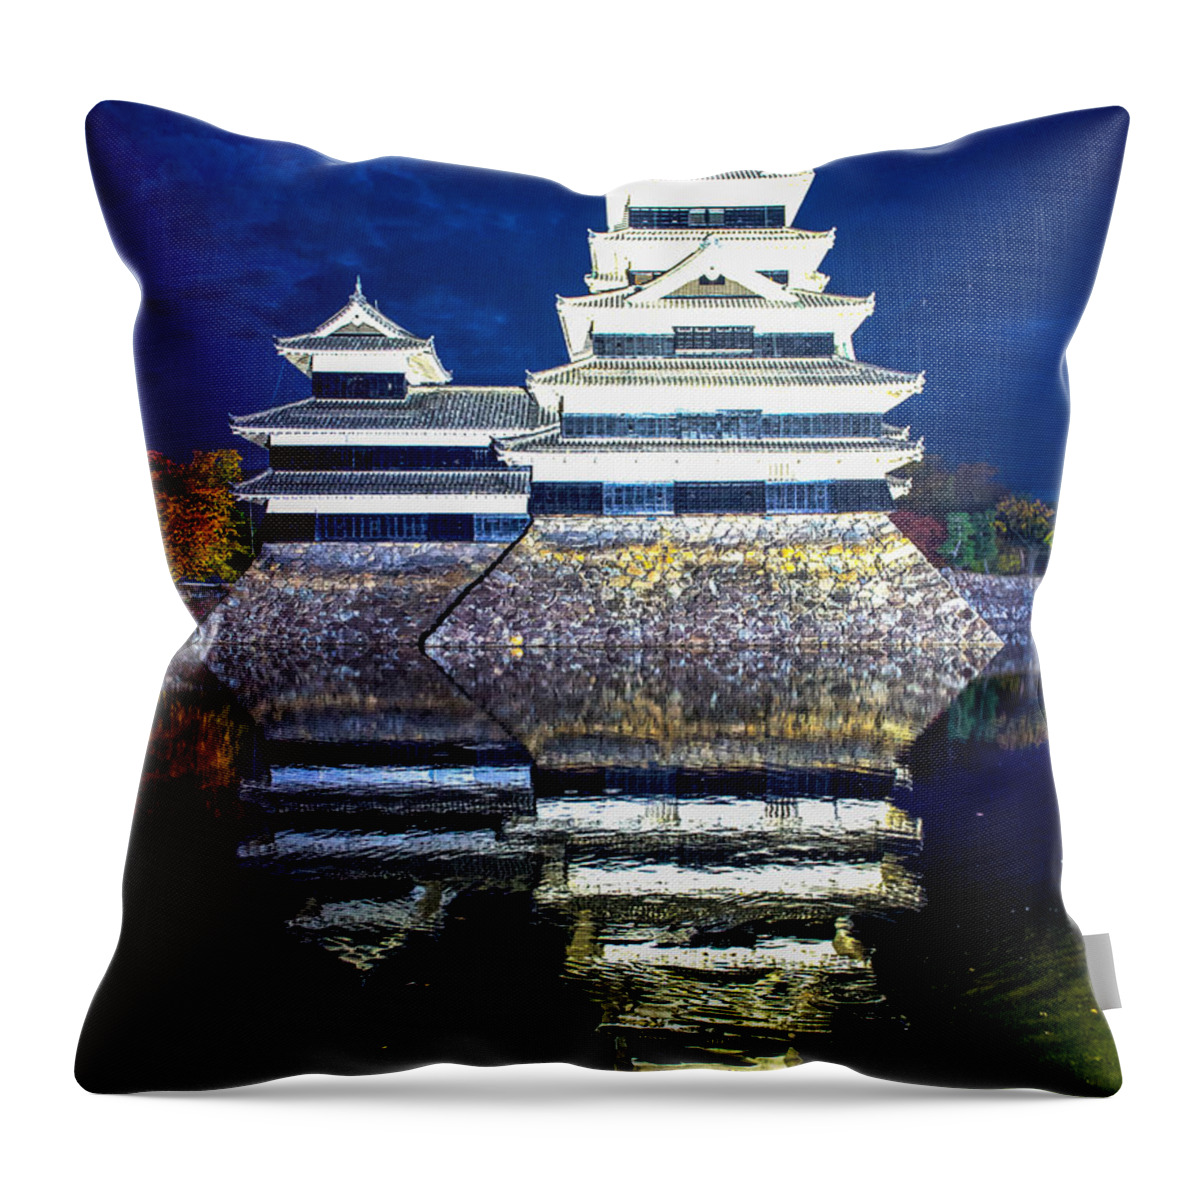 Matsumoto Castle Throw Pillow featuring the photograph Matsumoto Castle by Hisao Mogi